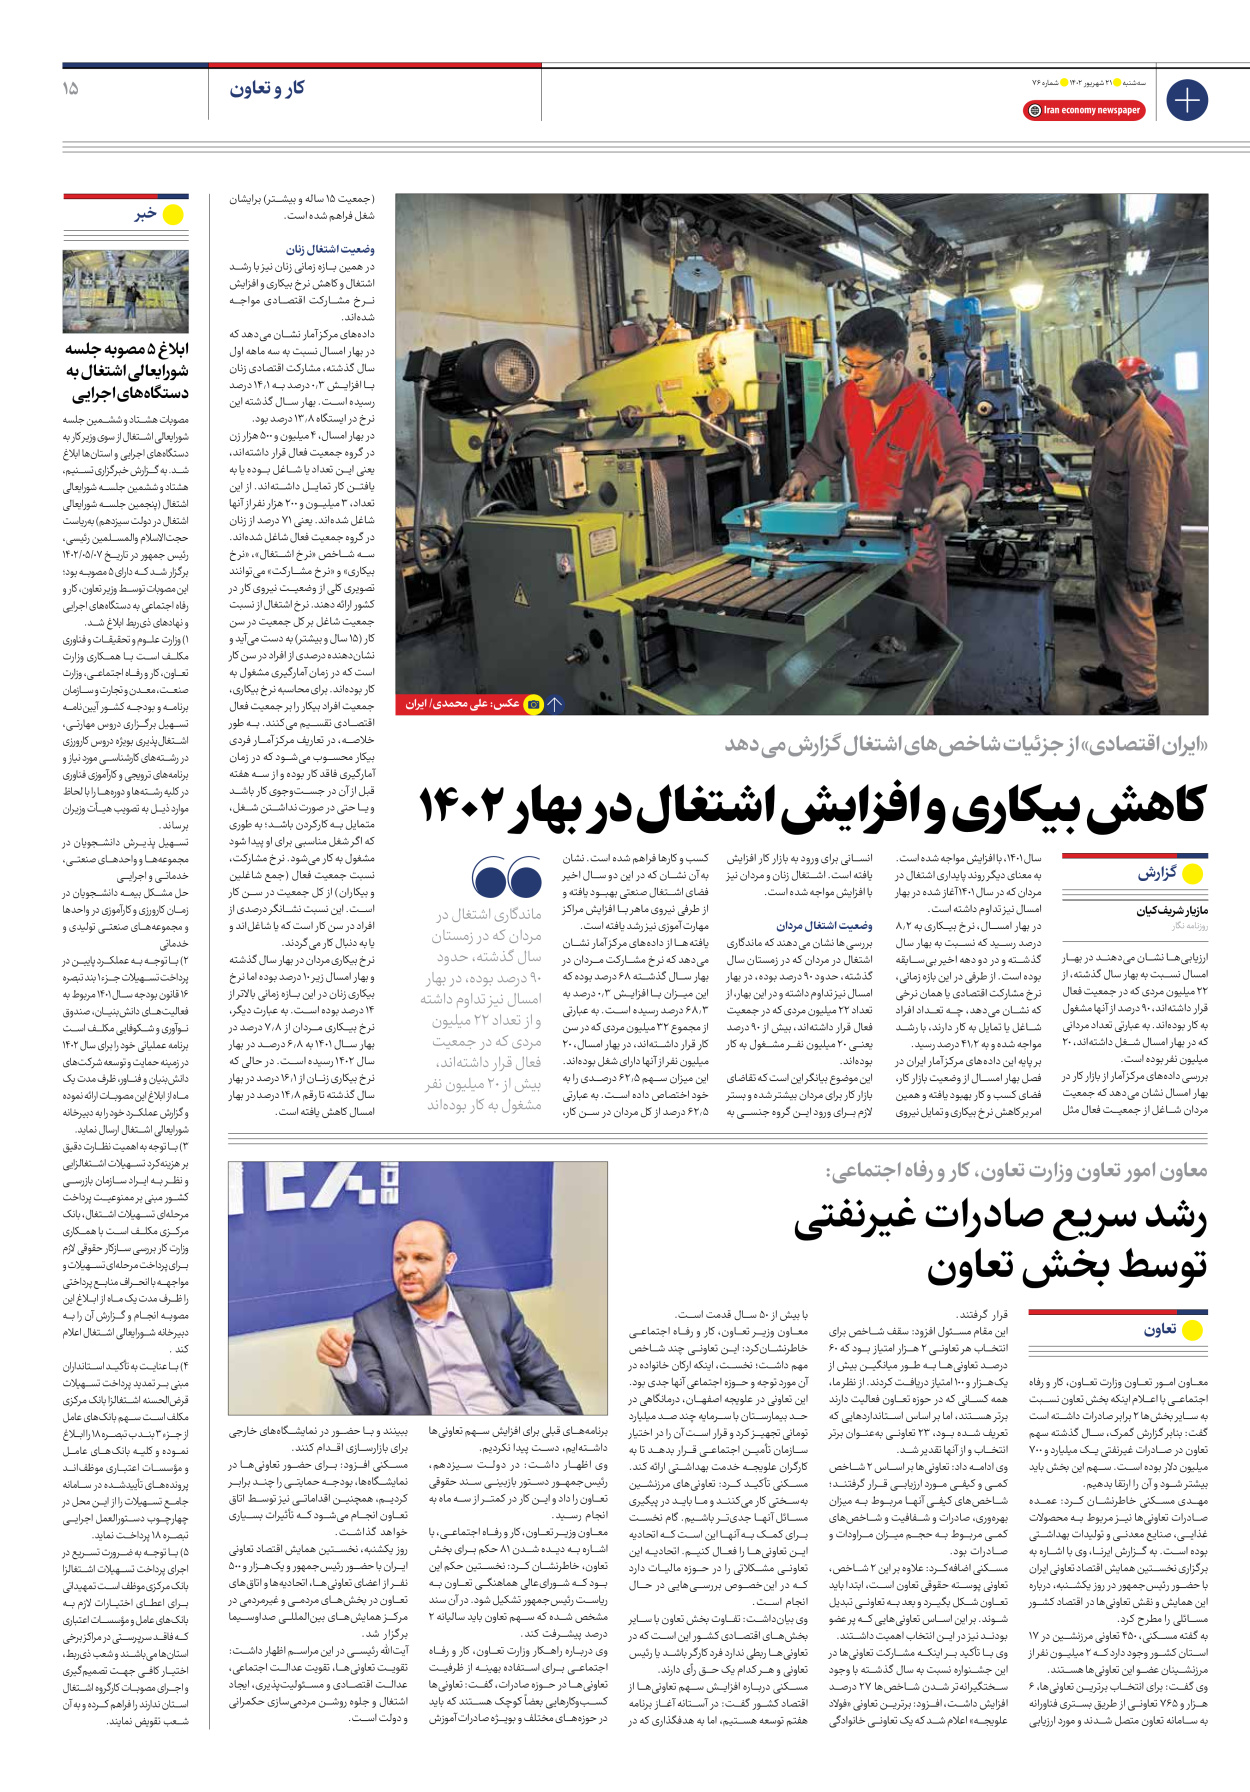 روزنامه ایران اقتصادی - شماره هفتاد و شش - ۲۱ شهریور ۱۴۰۲ - صفحه ۱۵